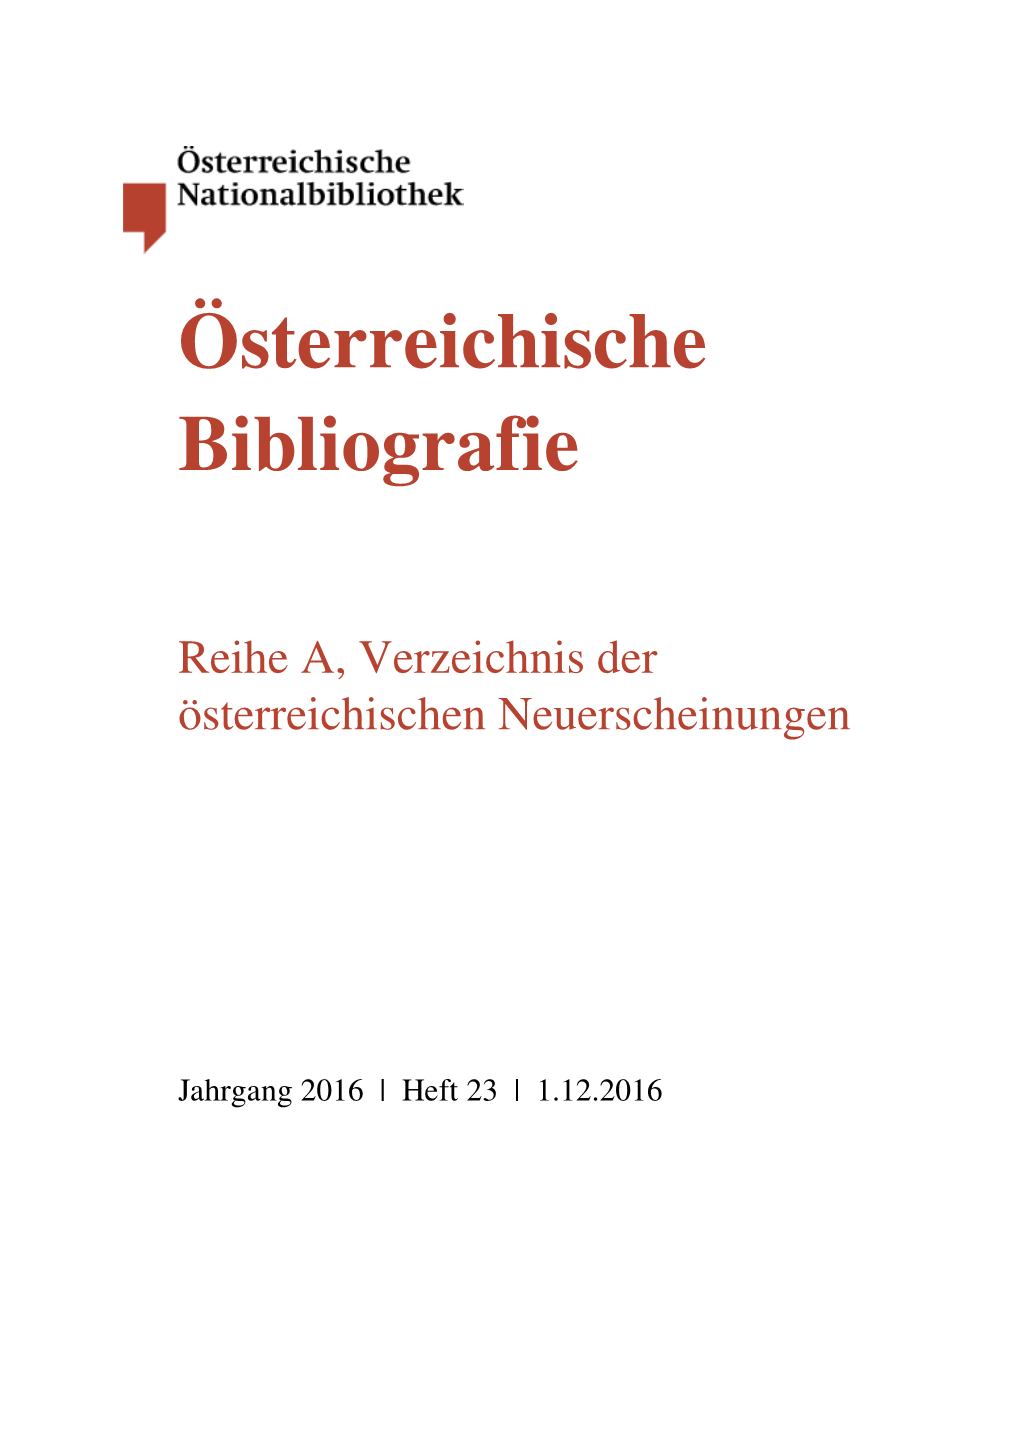 Österreichiche Bibliographie